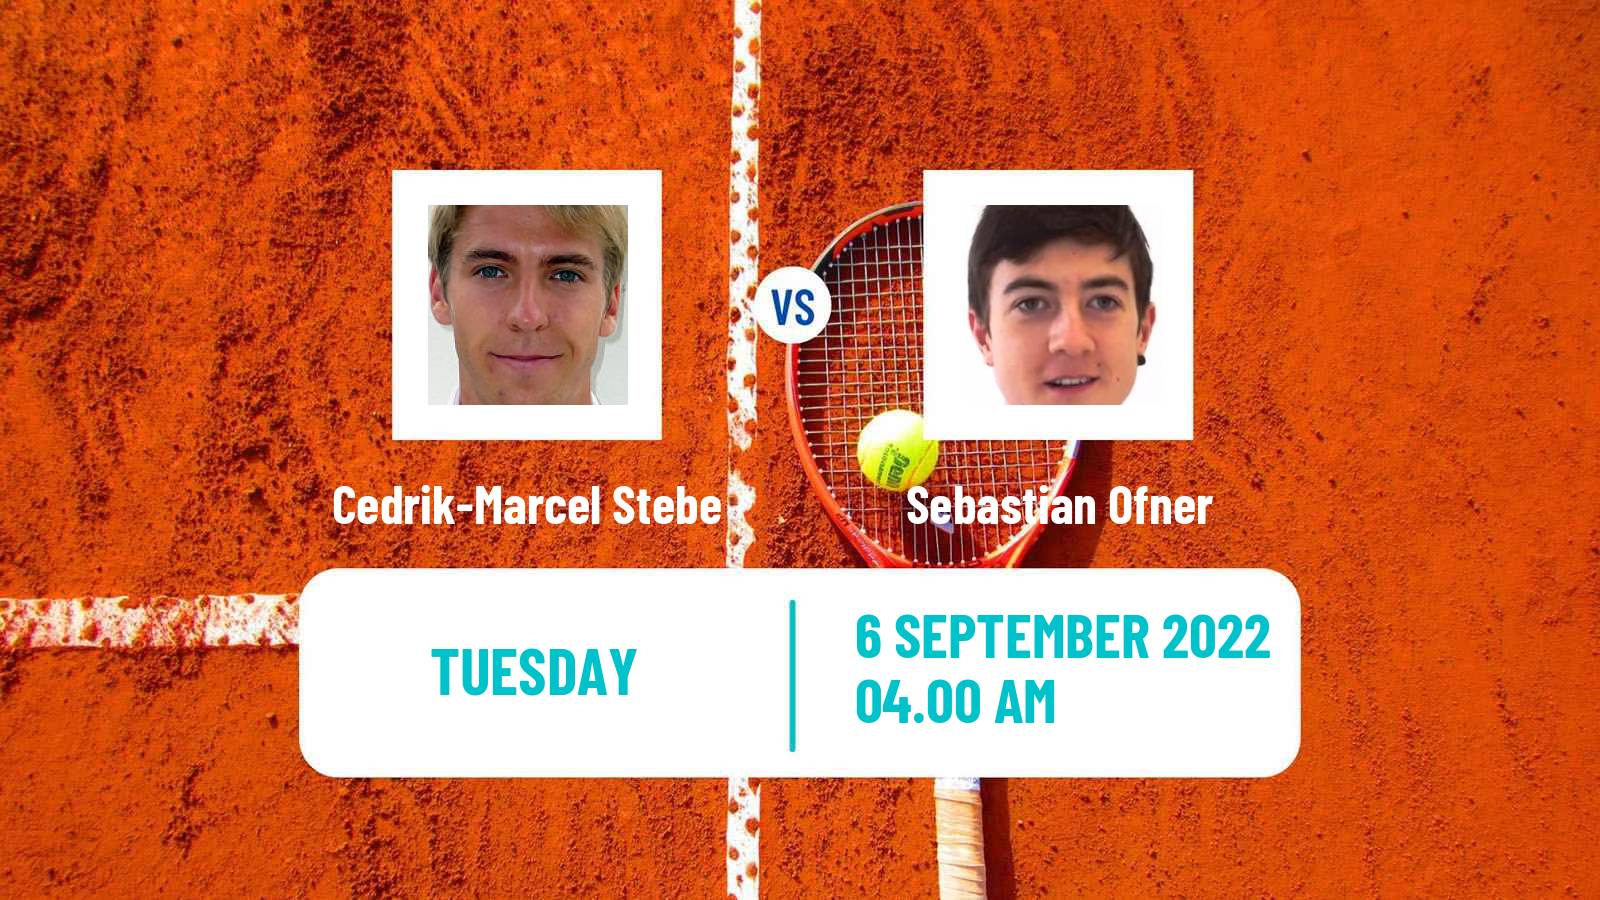 Tennis ATP Challenger Cedrik-Marcel Stebe - Sebastian Ofner